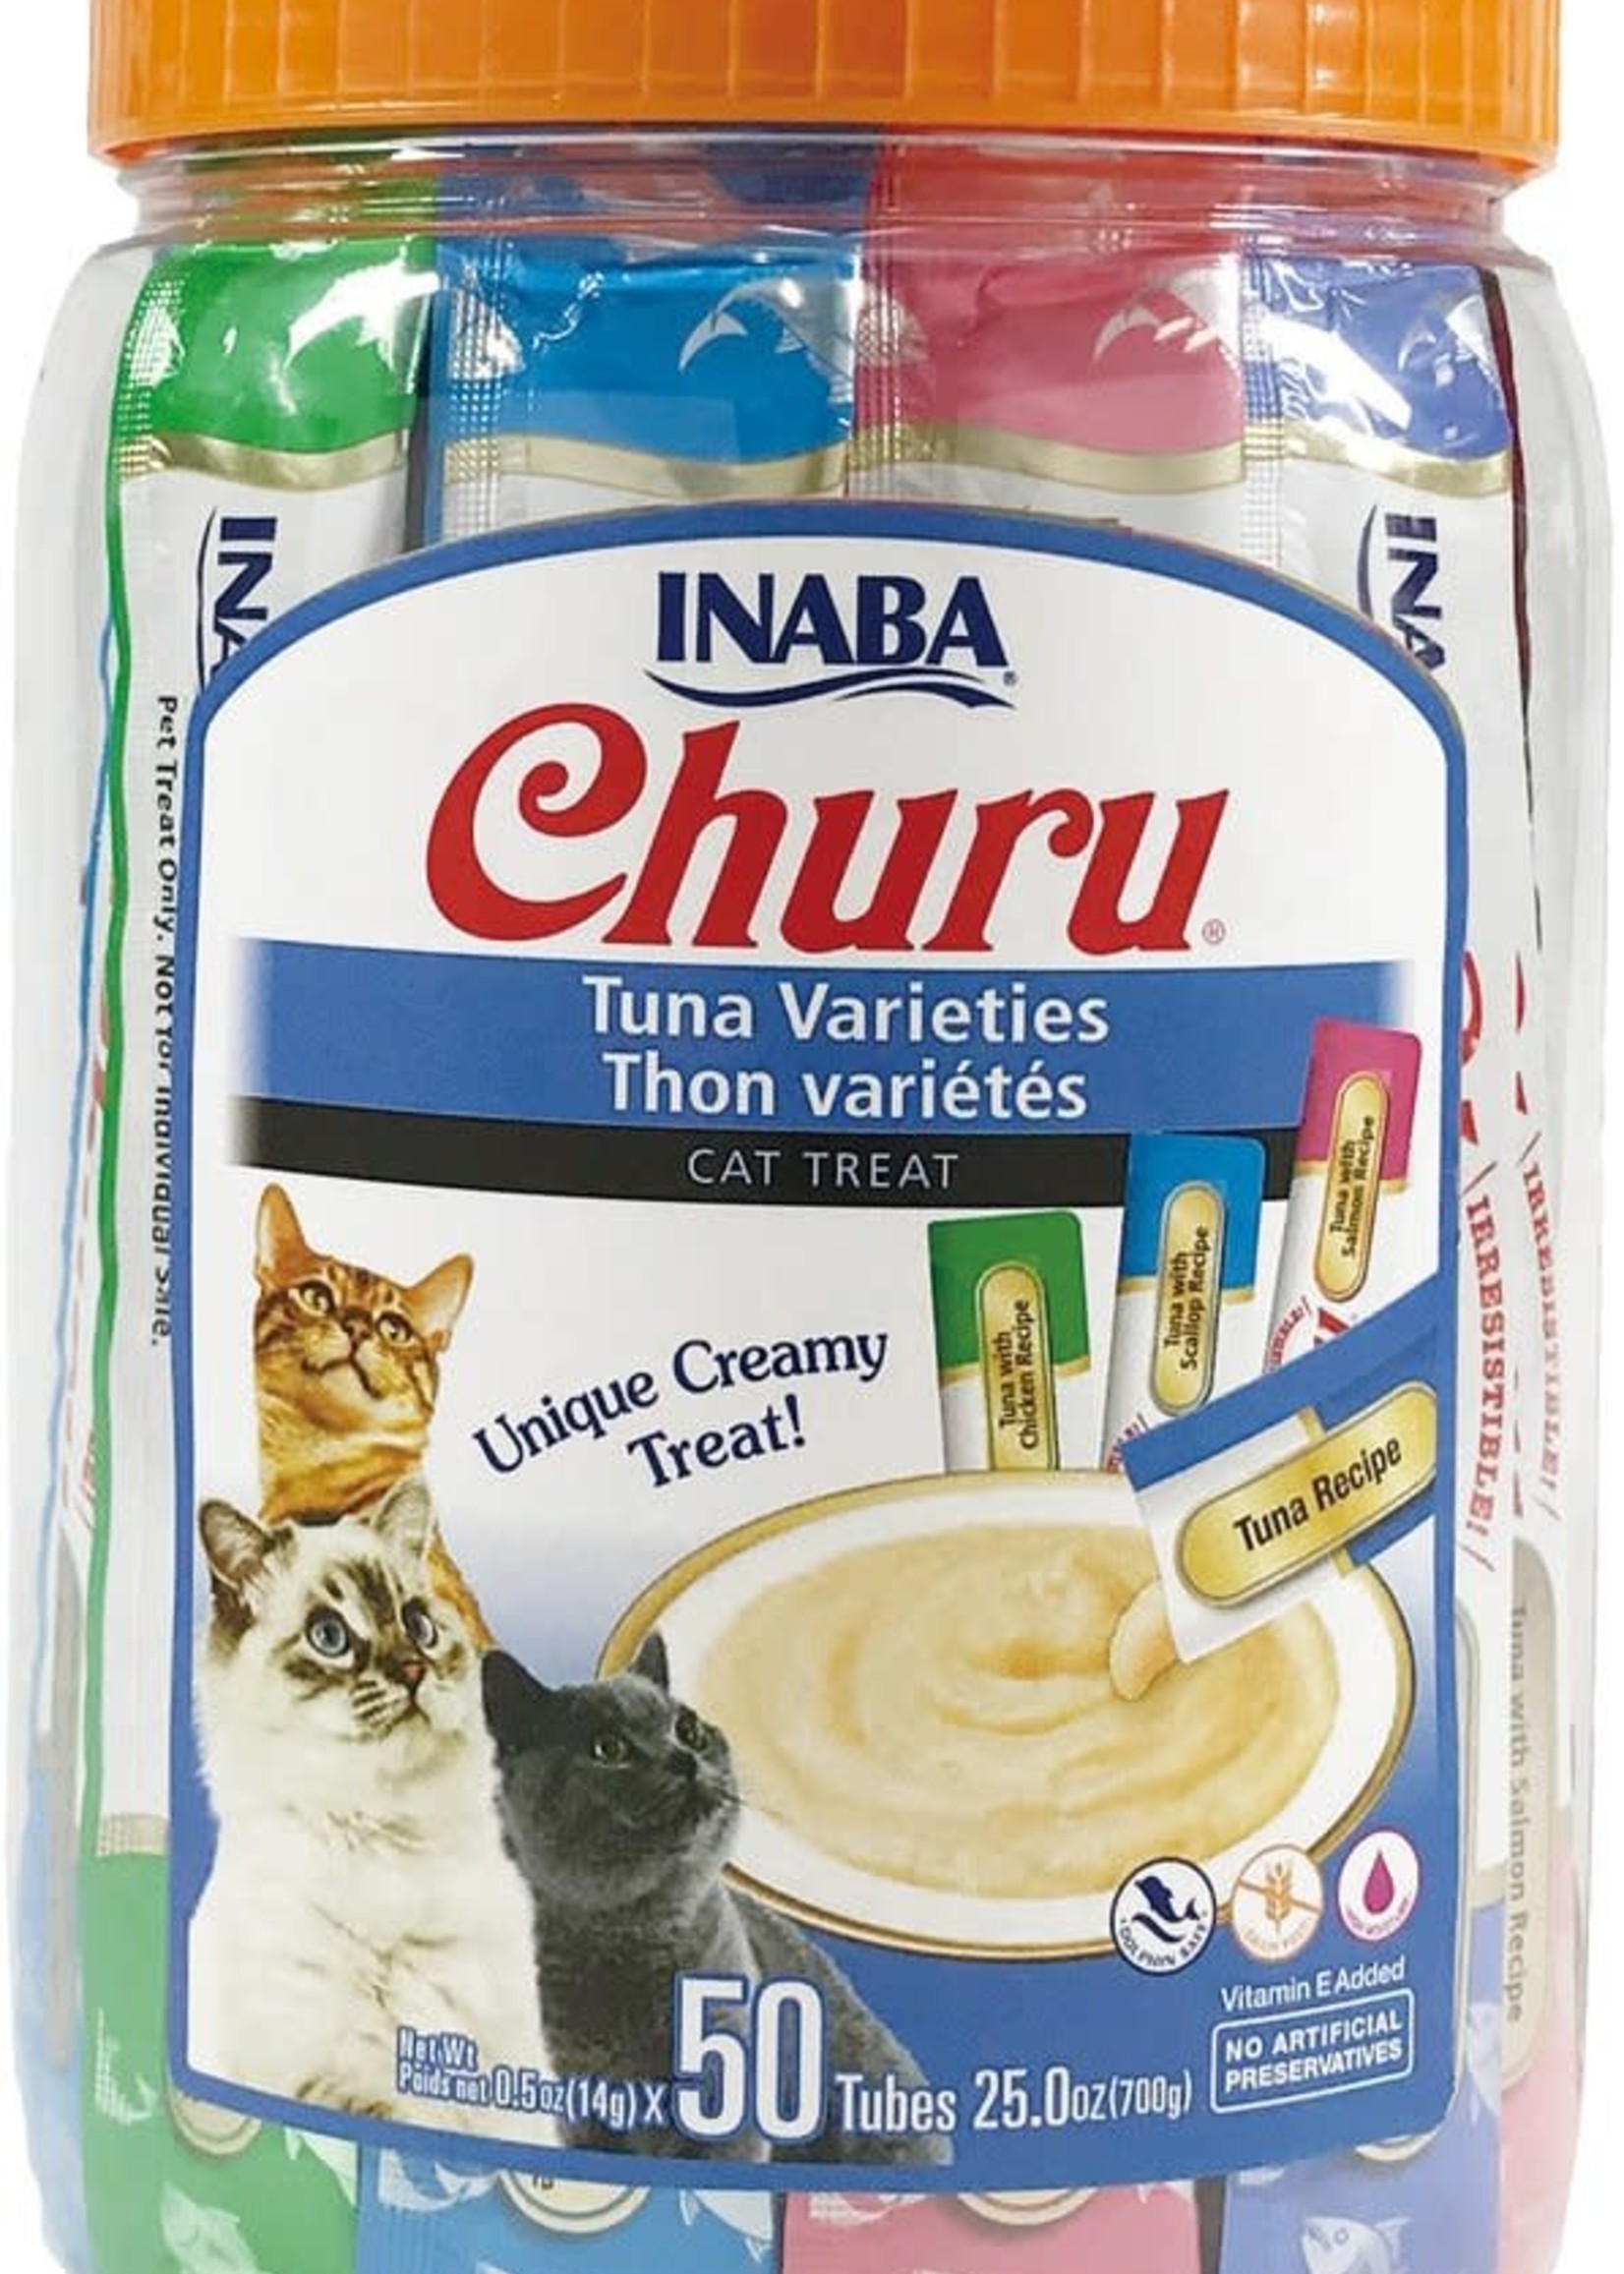 Inaba Foods USA Inaba Cat Treat Churu Puree Tuna Variety 0.5 oz (50 pack)